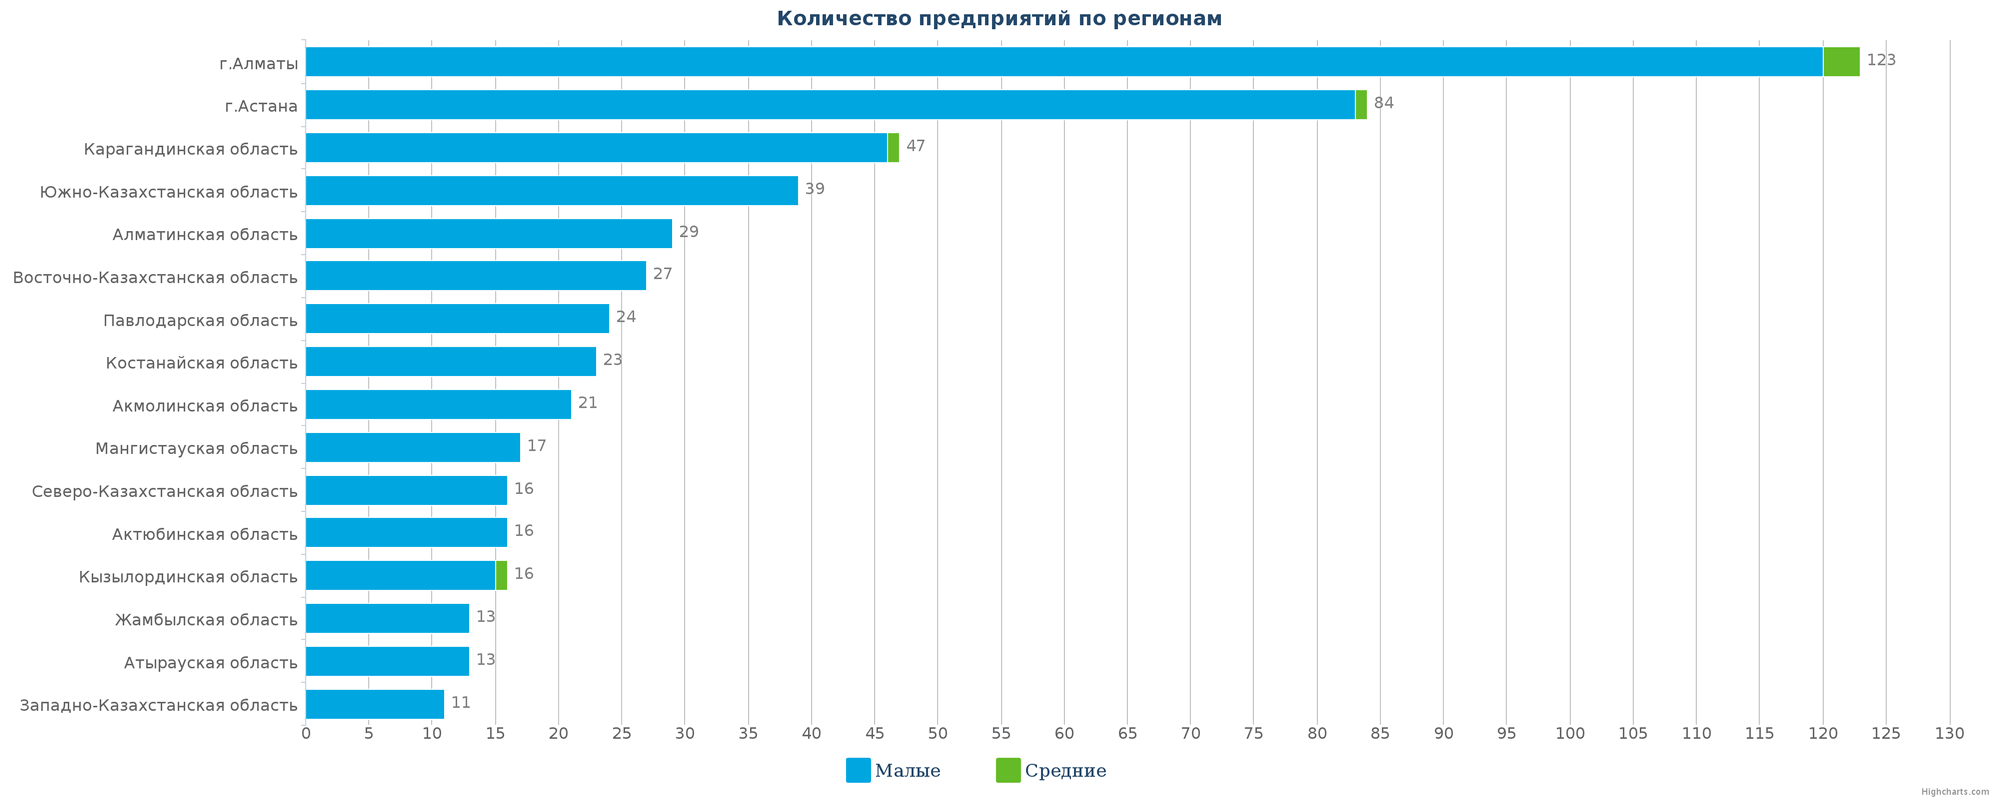 Количество новых юридических лиц в базе данных по регионам Казахстана